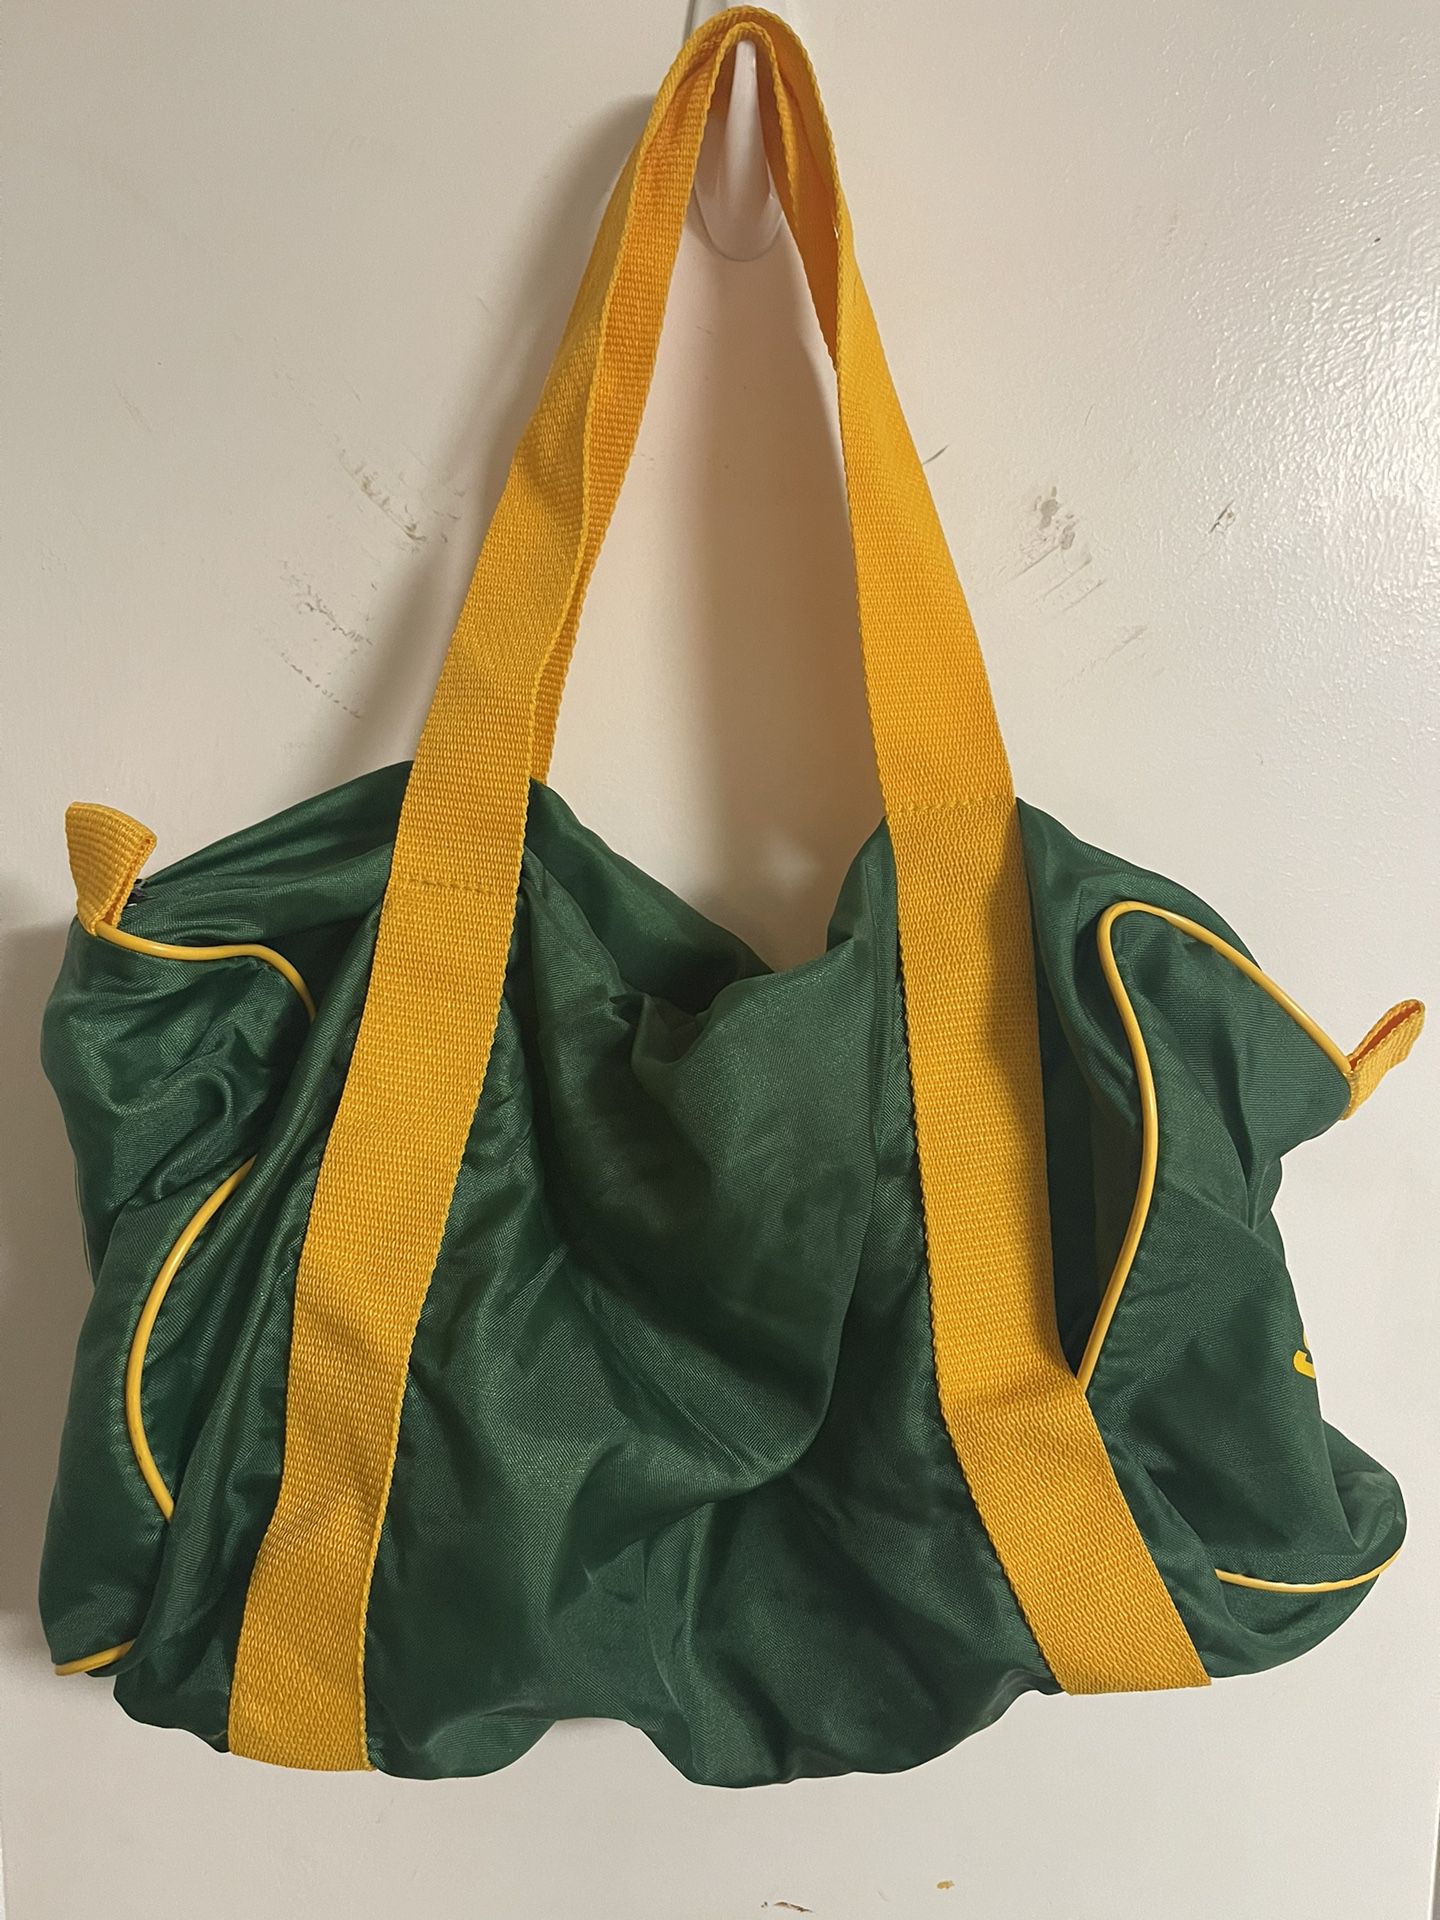 Seattle Super Sonics - Vintage Duffle Bag